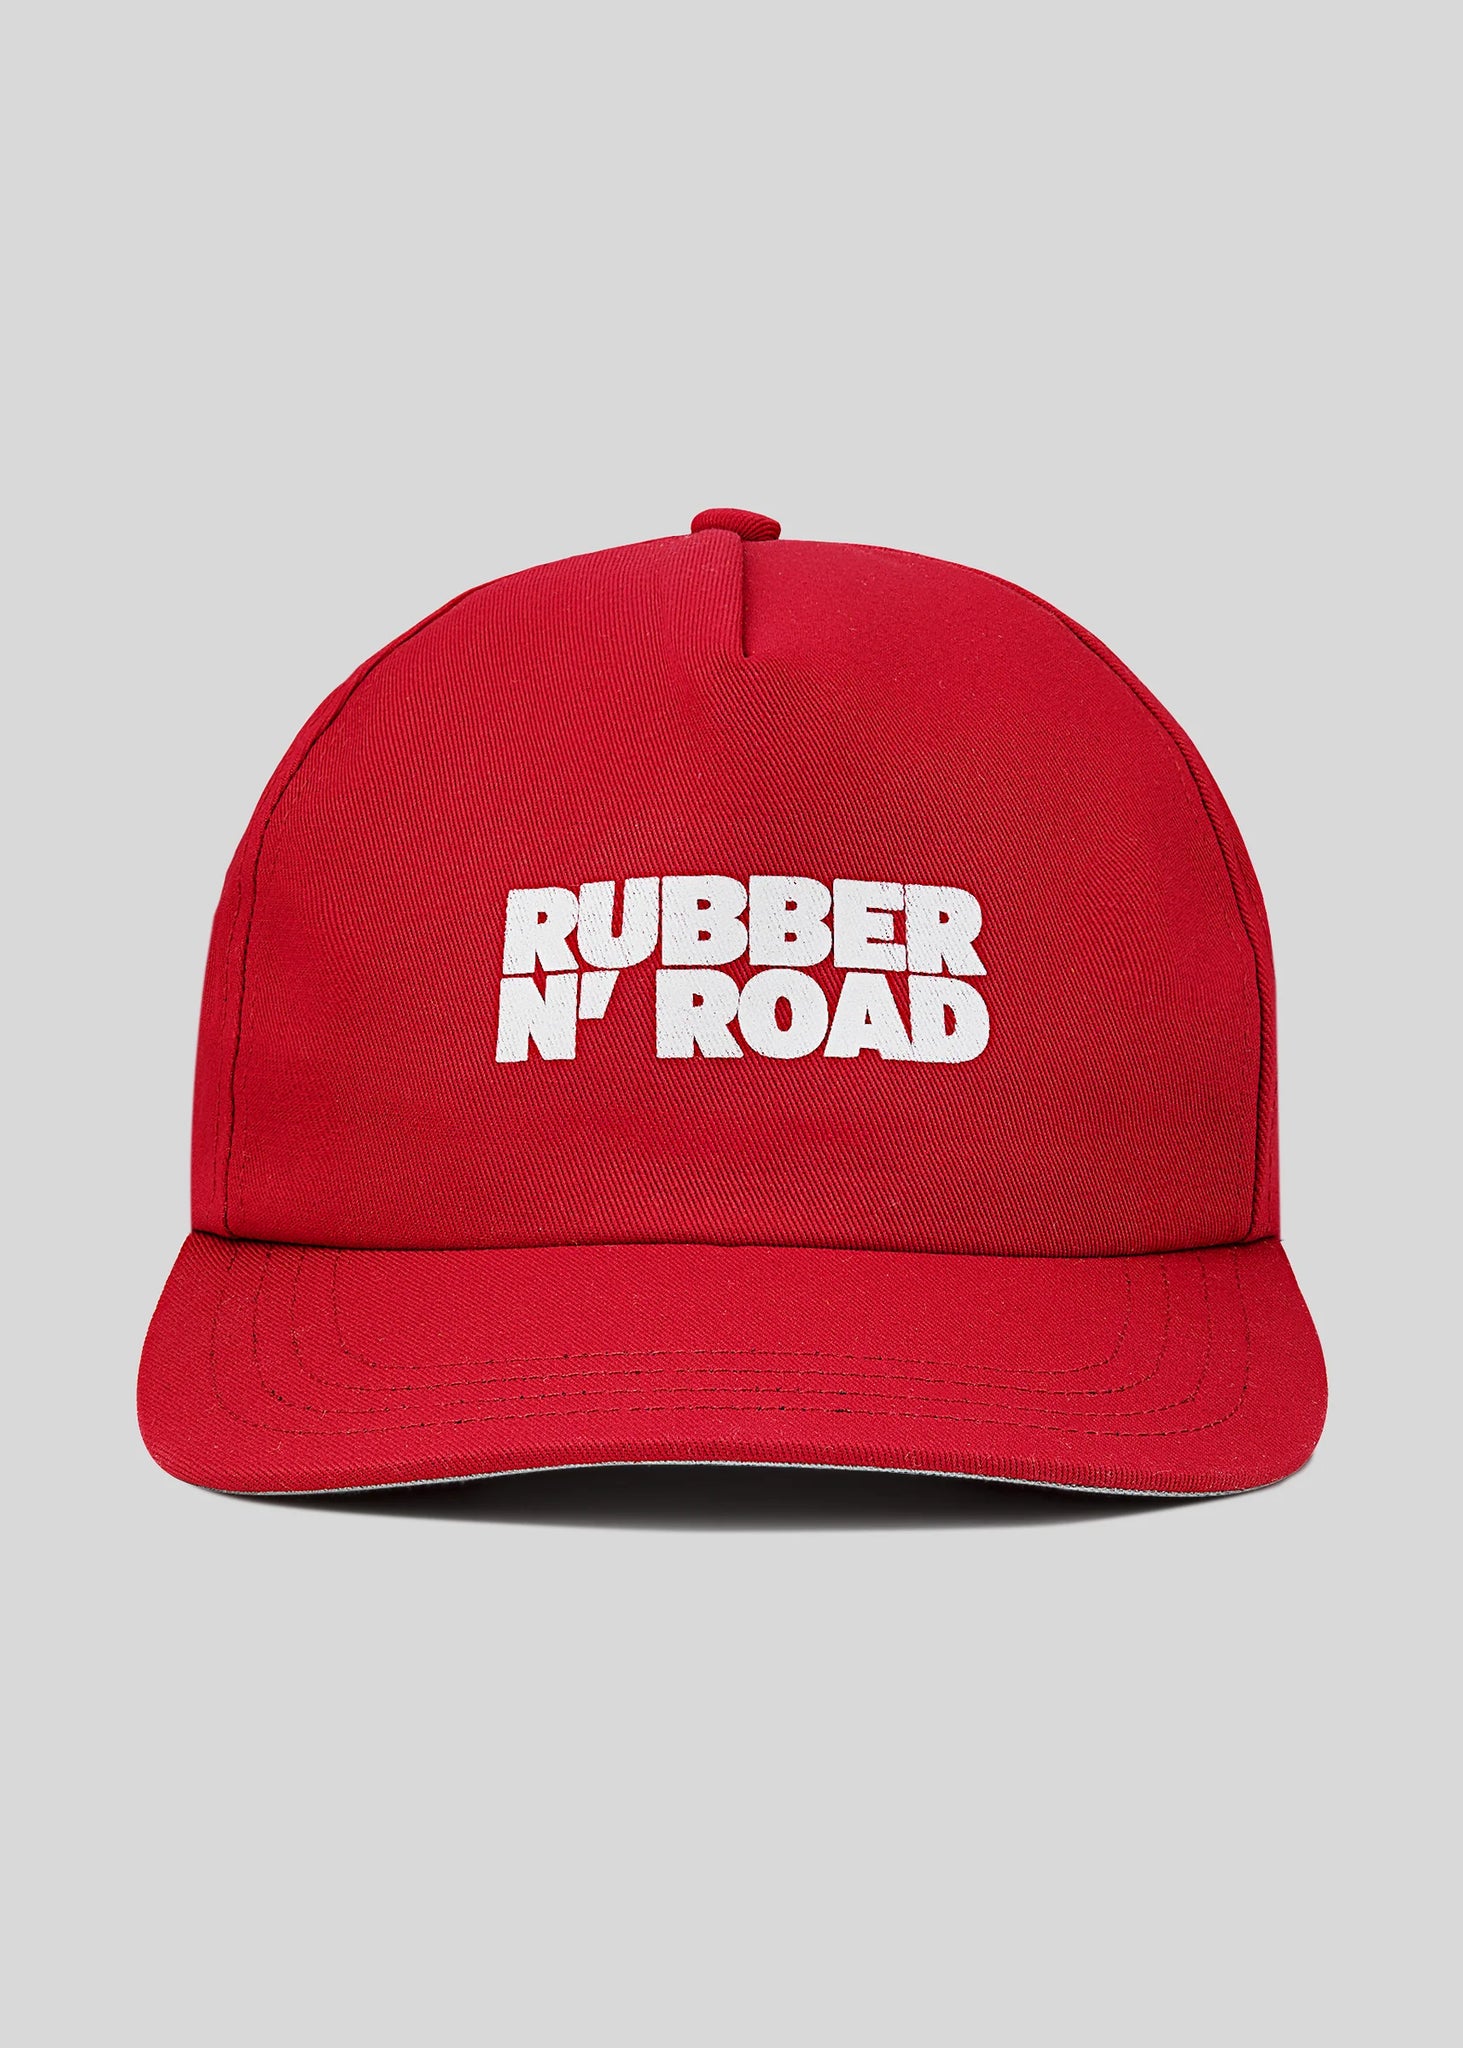 Rubber N' Road | Uniform Hat